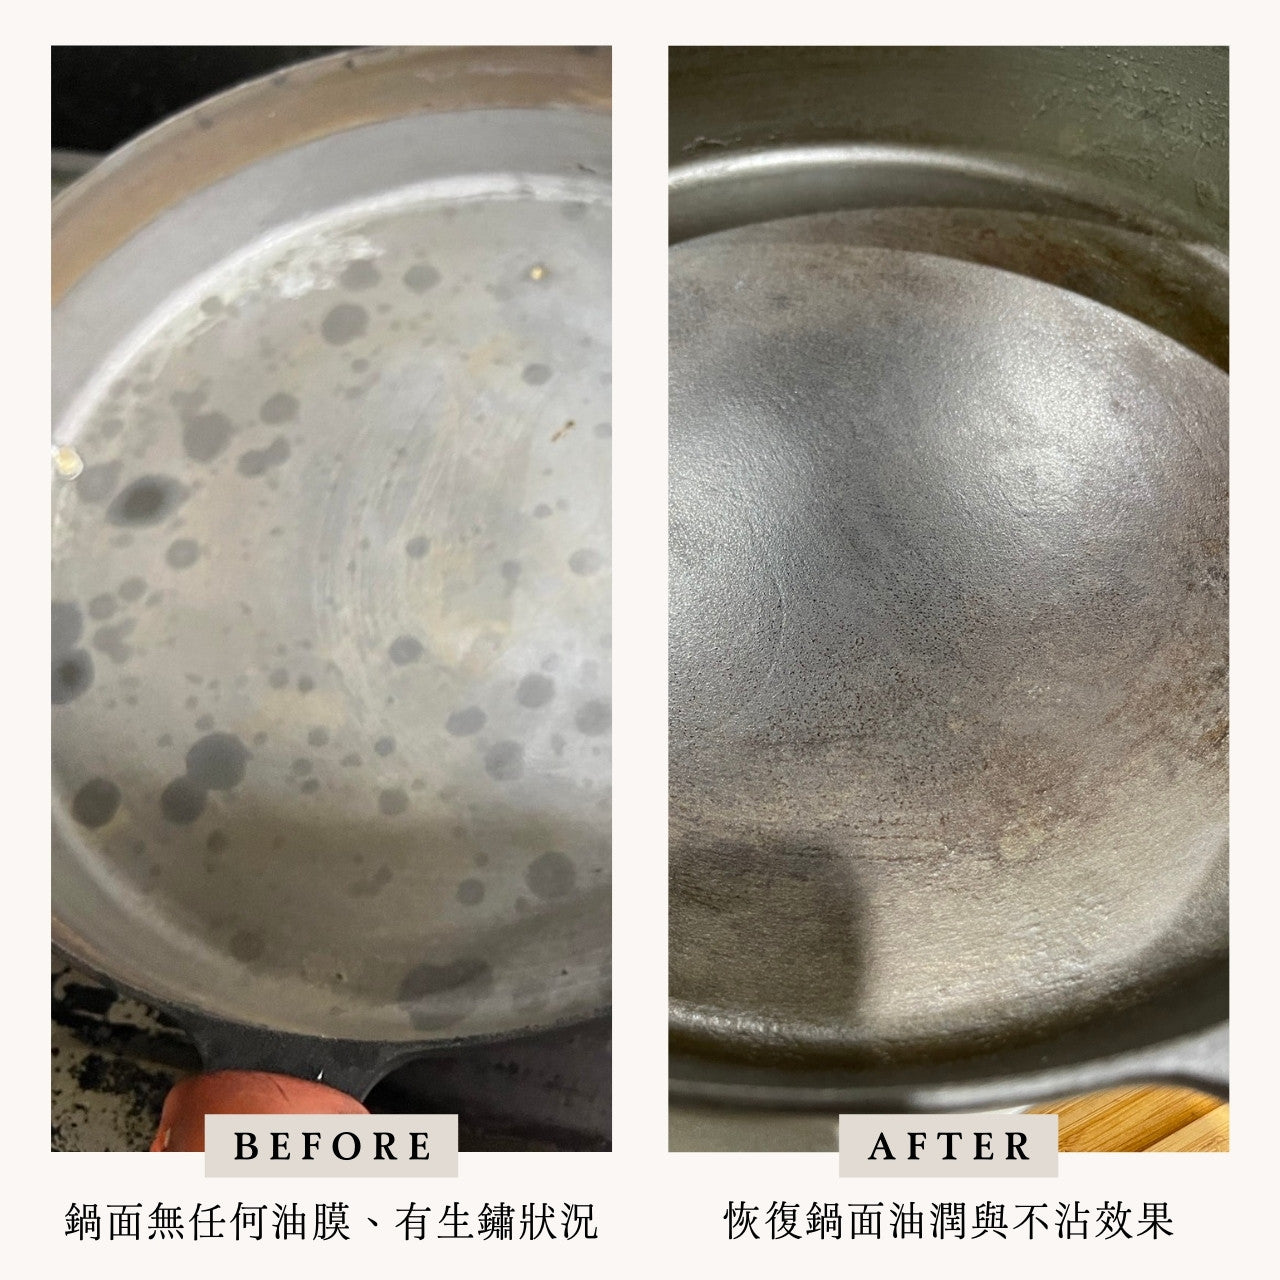 黑平鍋表面油膜都被我刷洗掉了怎麼辦？